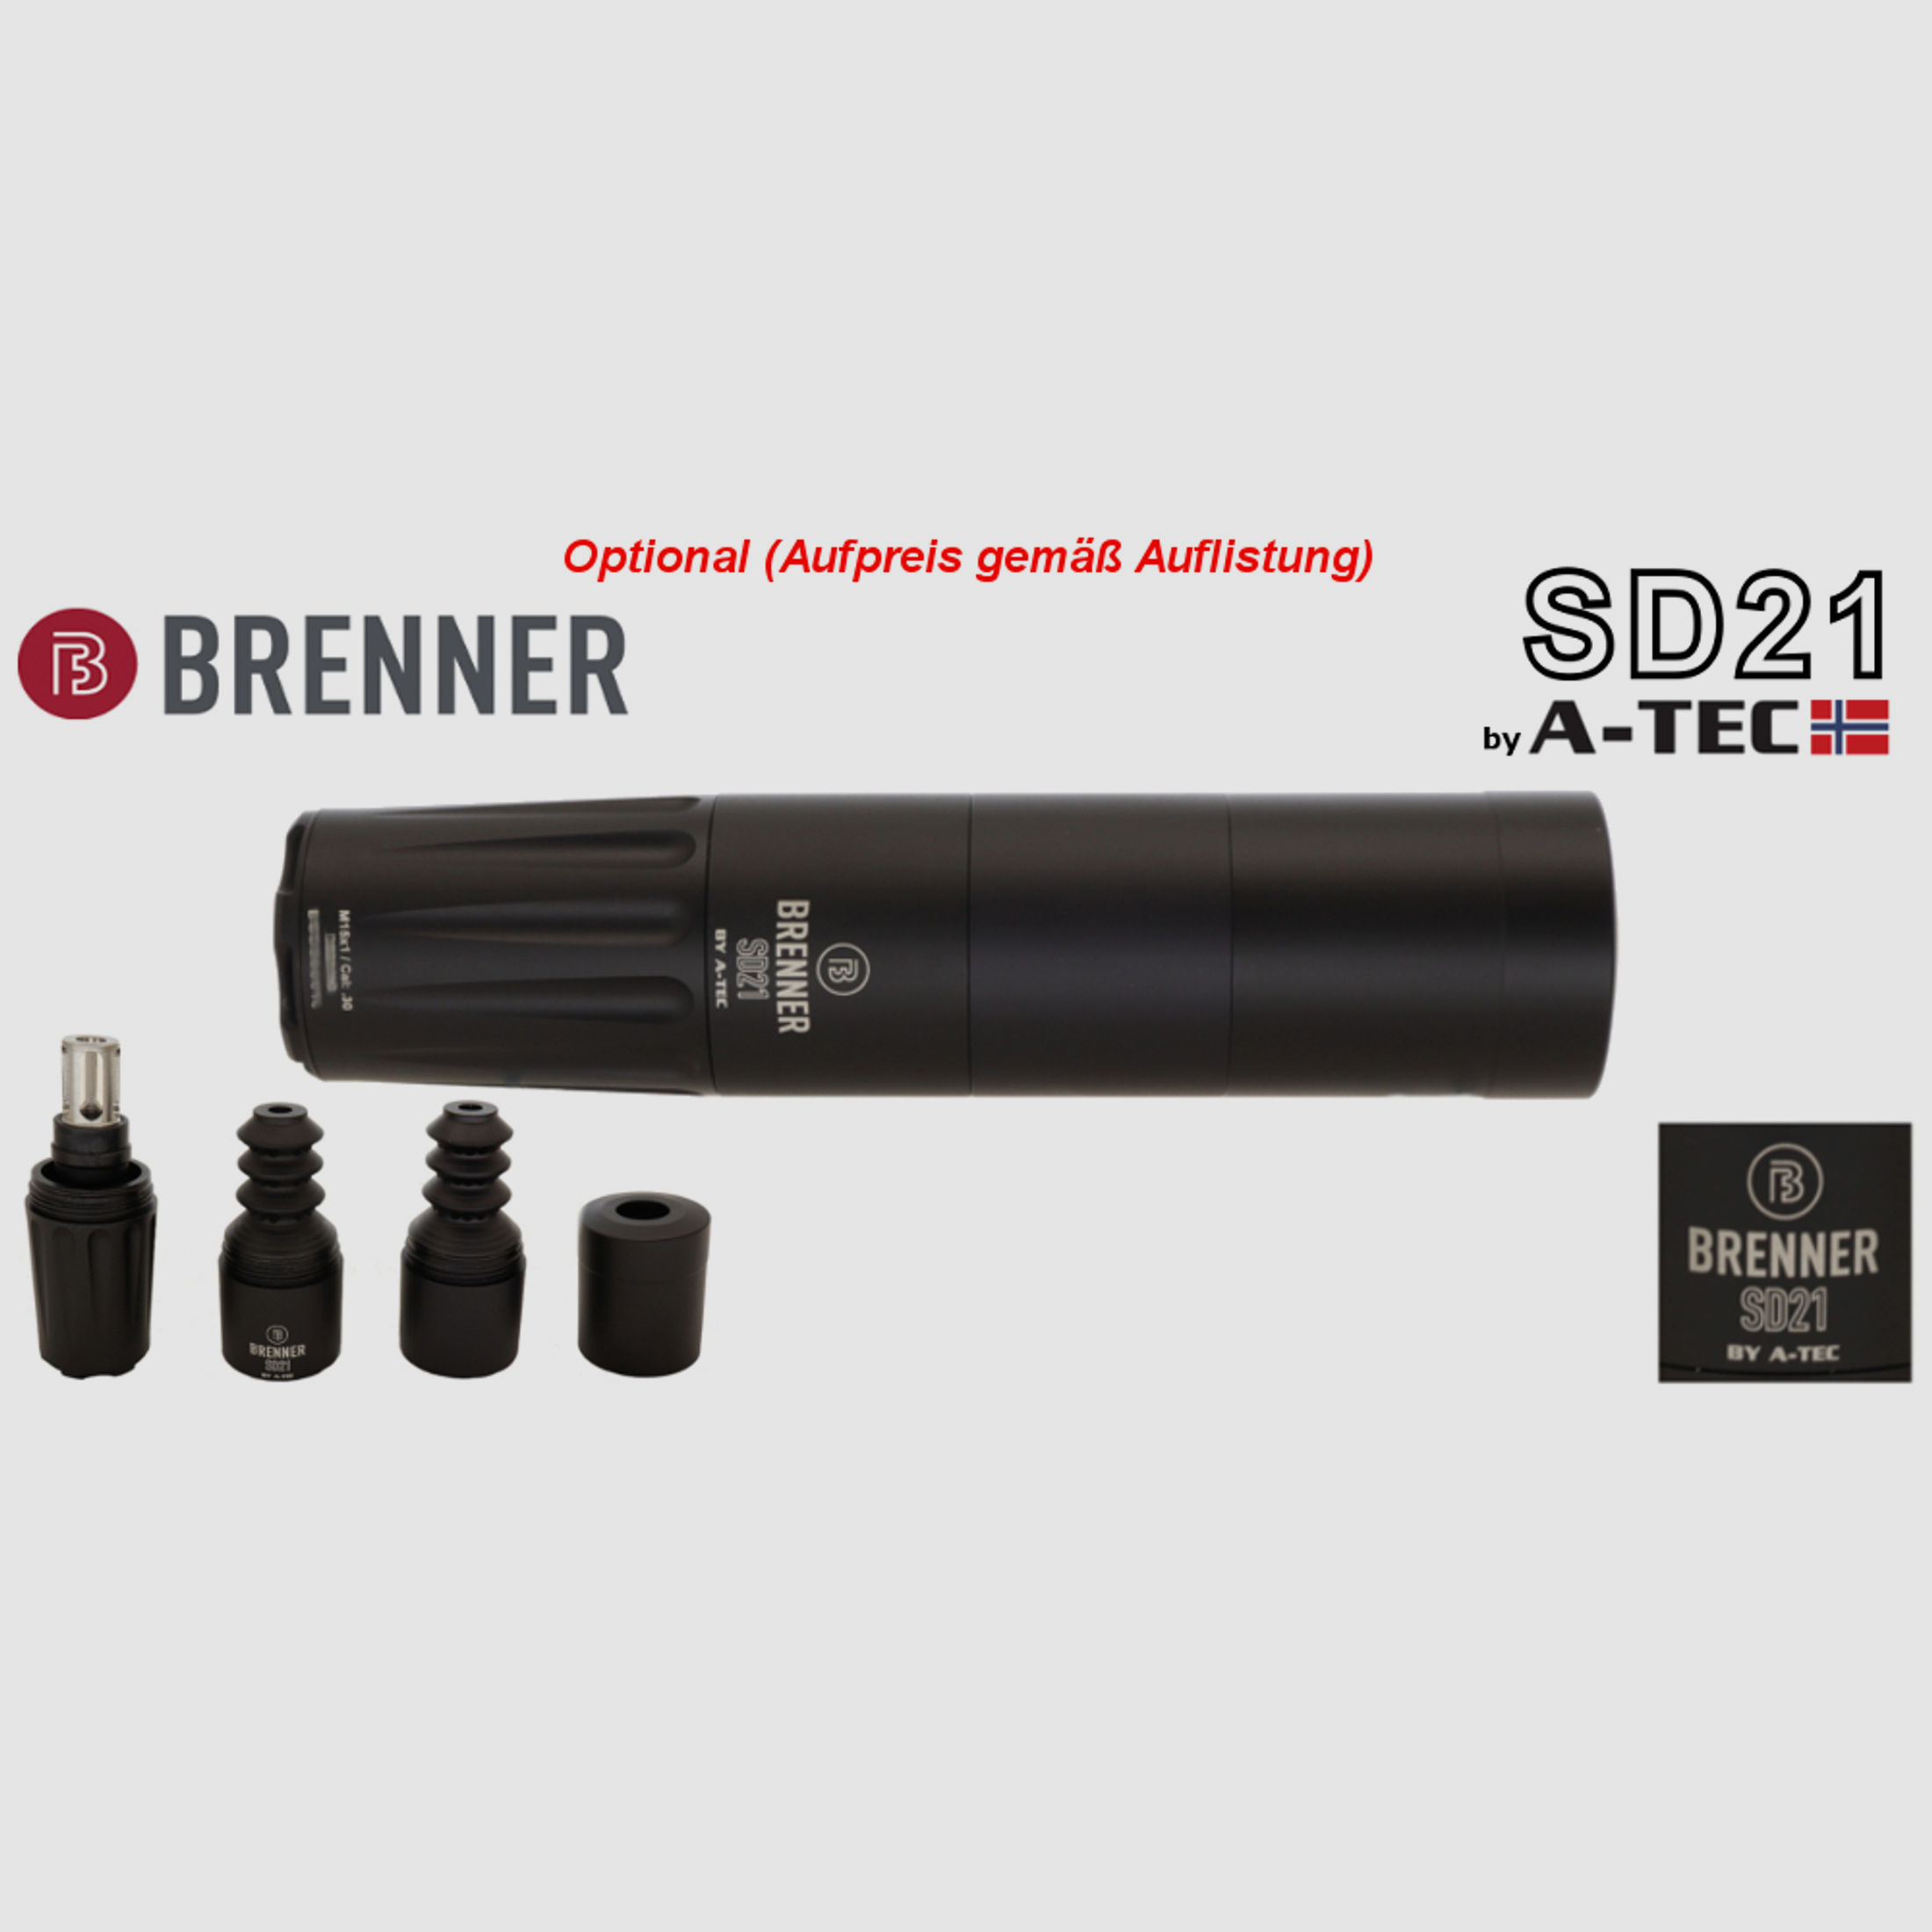 Komplettpaket: Brenner BR20 B&H Prohunter Flex Lochschaft mit doppelter Verstellung inkl. Hawke Endurance 3-12x56 (Art.Nr.: BR20PHFP4) Finanzierung möglich